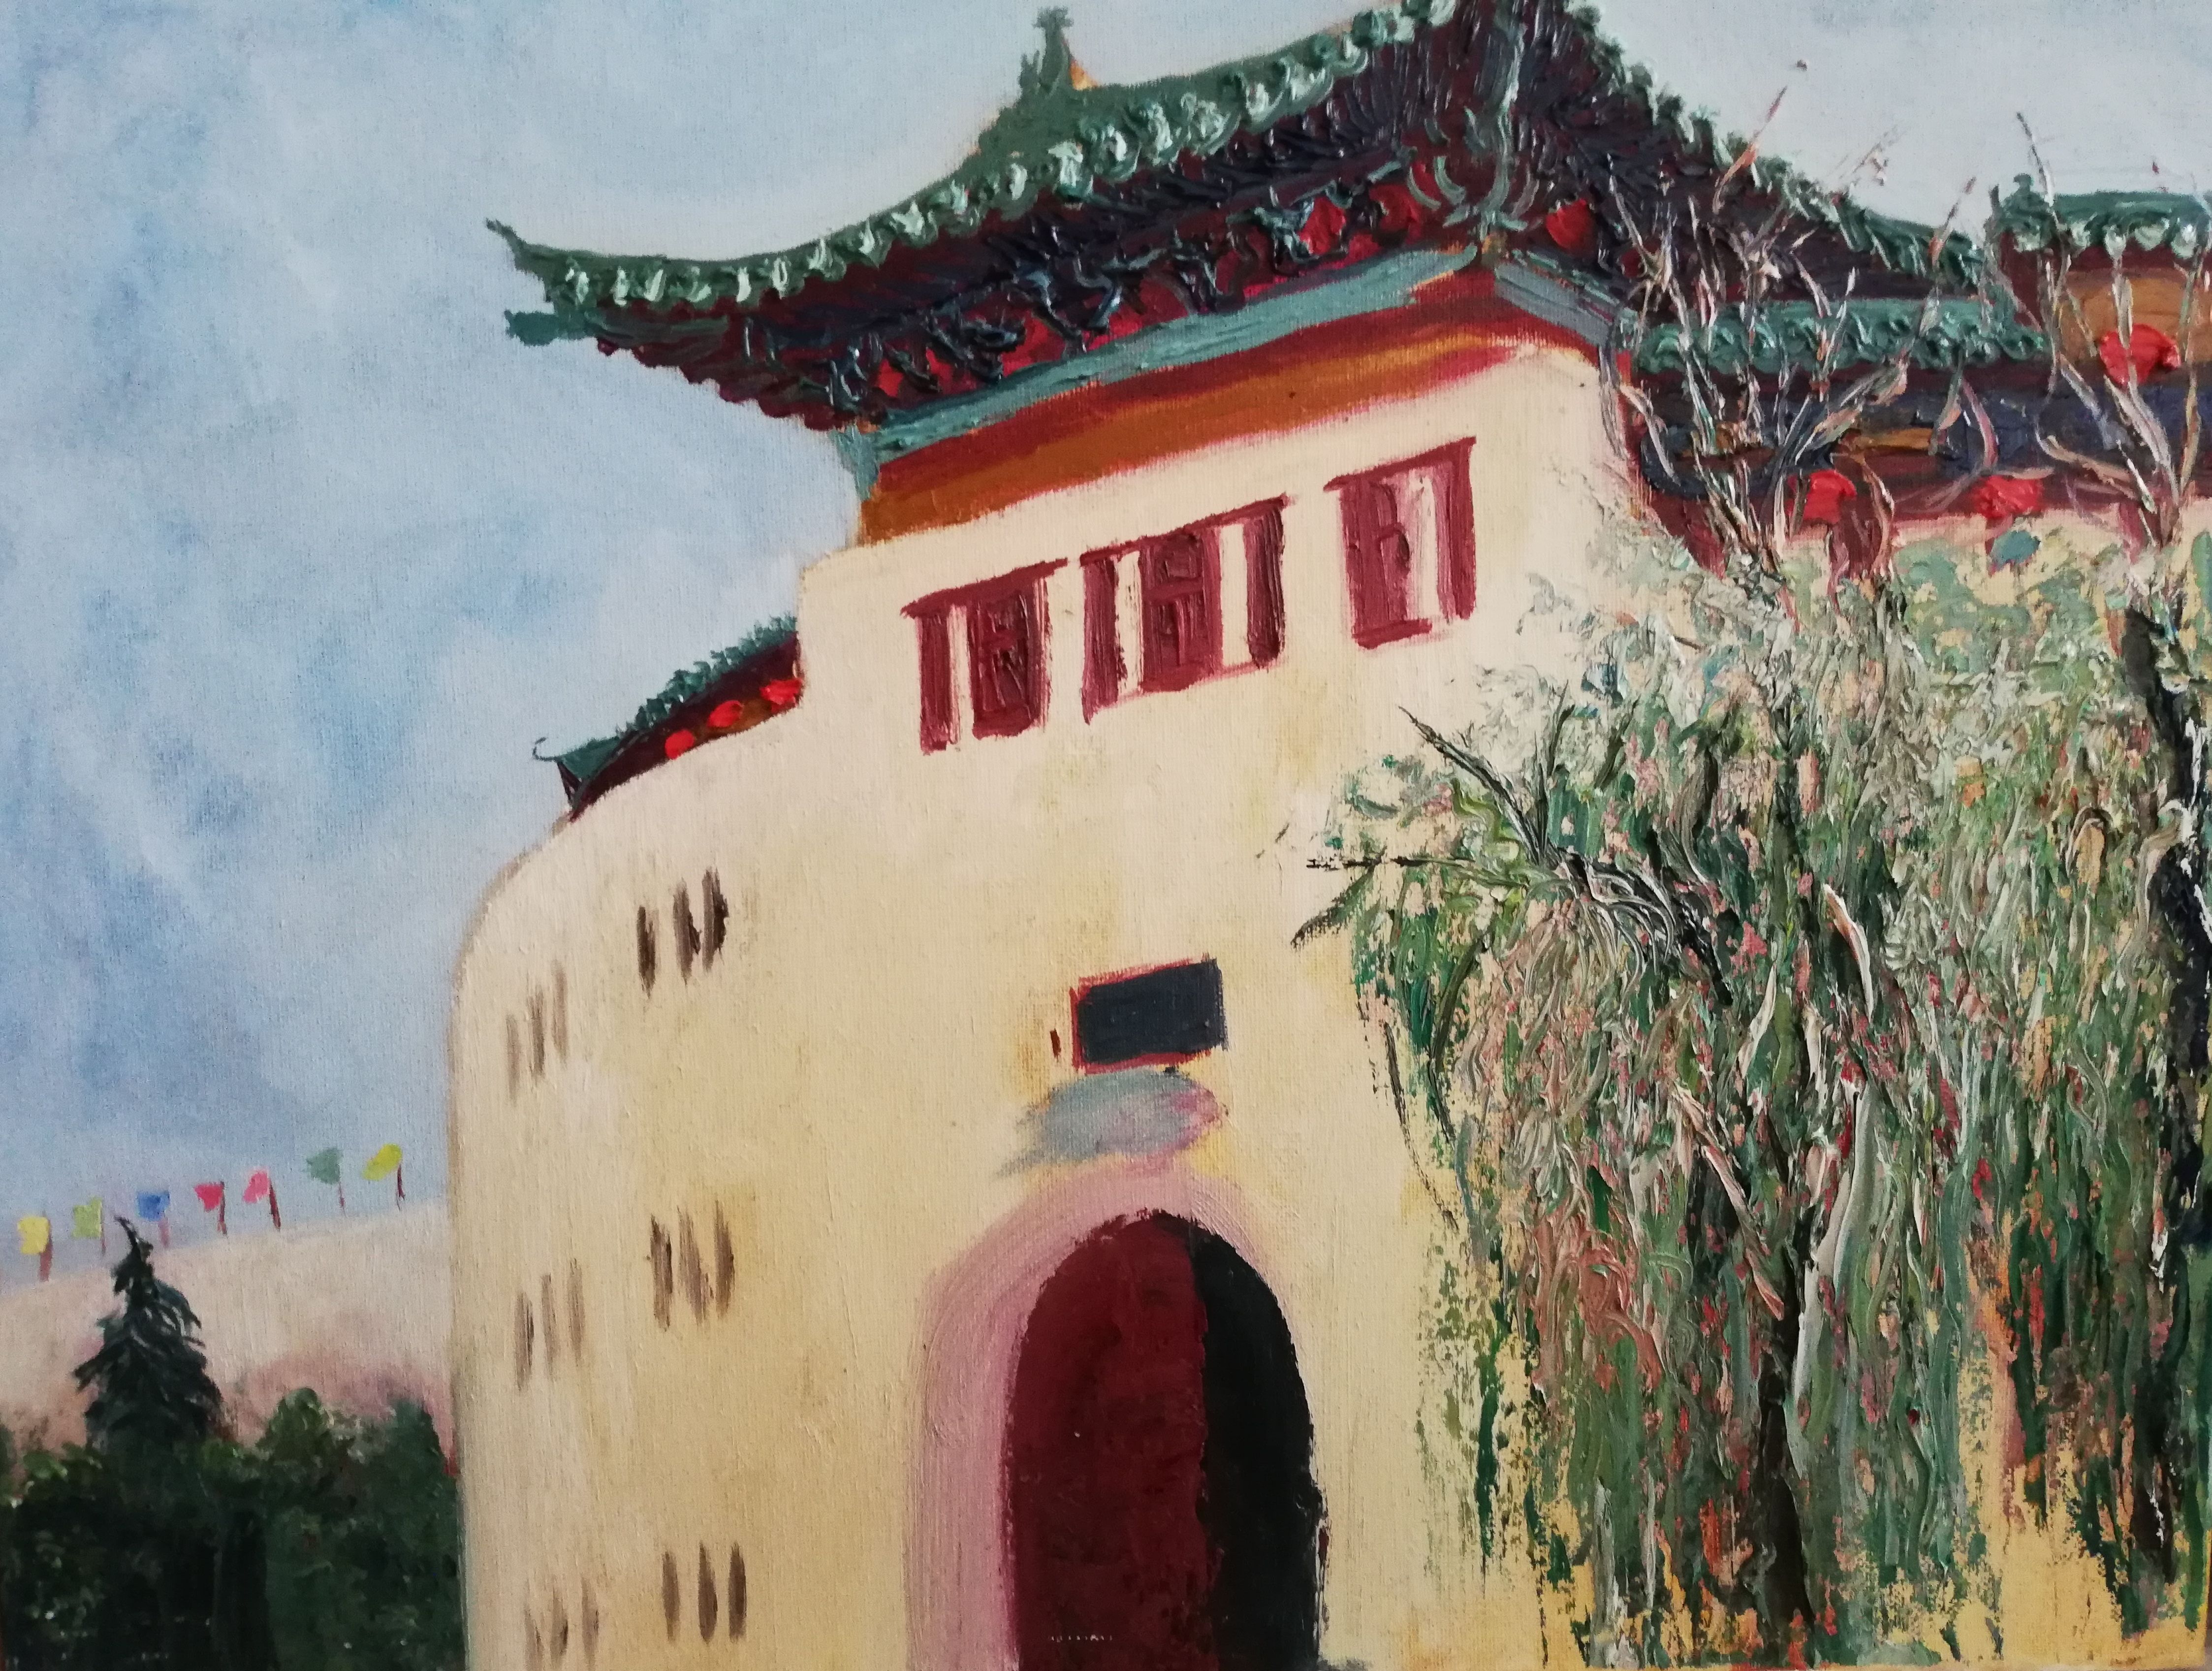 Lijing Gate in Luoyang